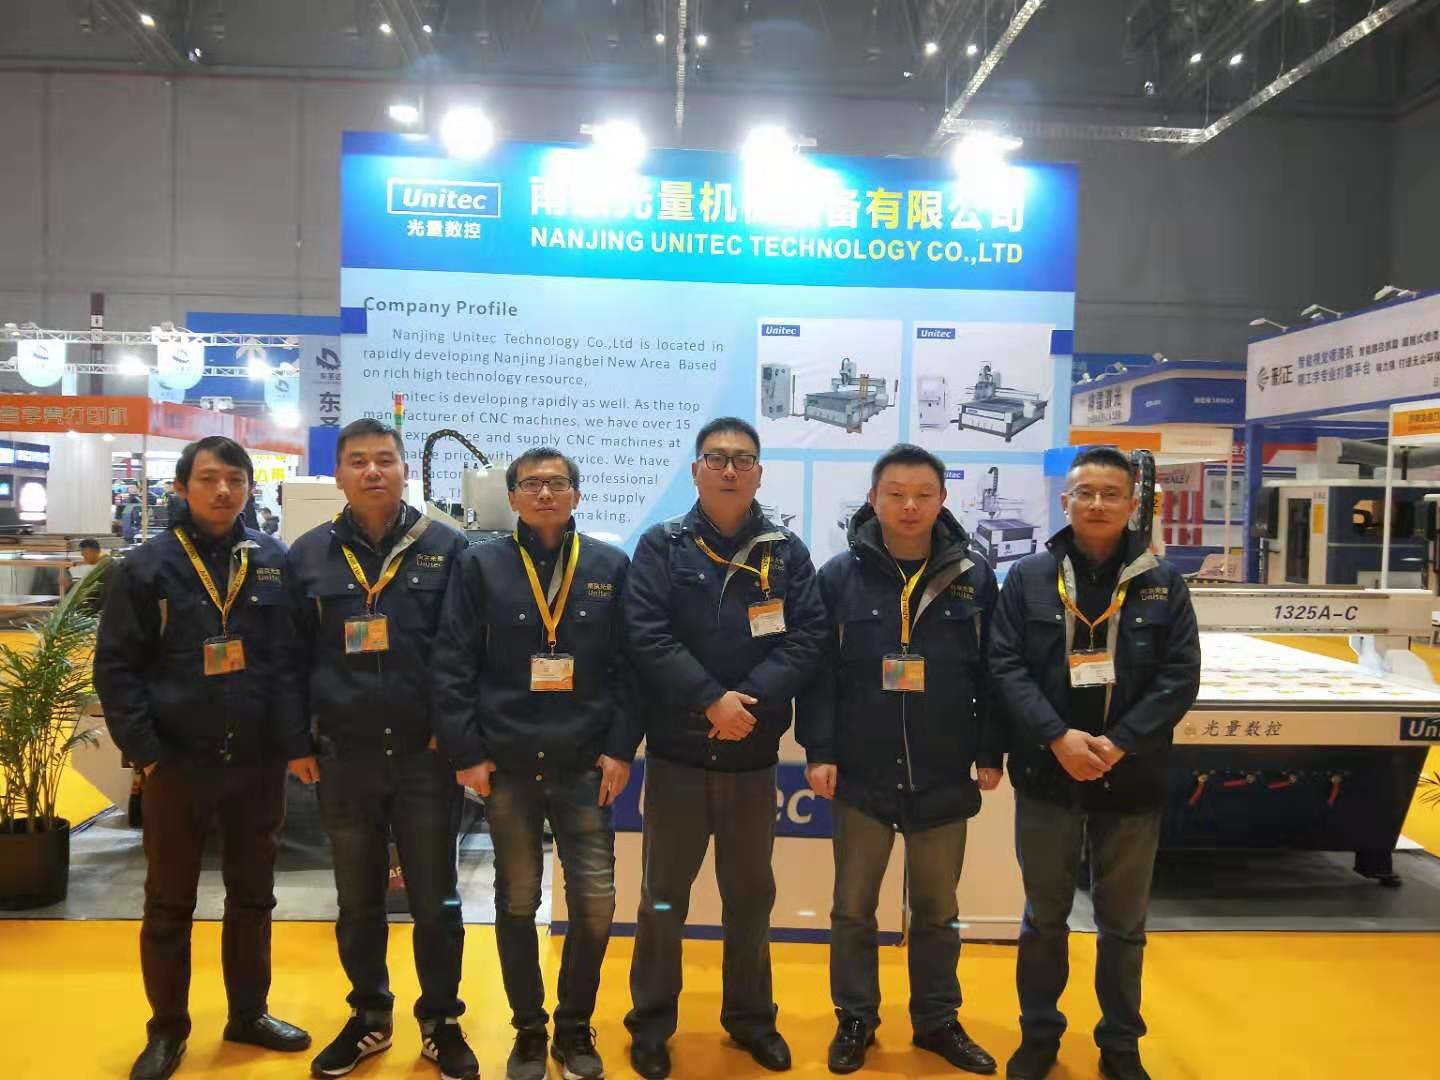 จีน Nanjing Unitec Technology Co., Ltd. รายละเอียด บริษัท